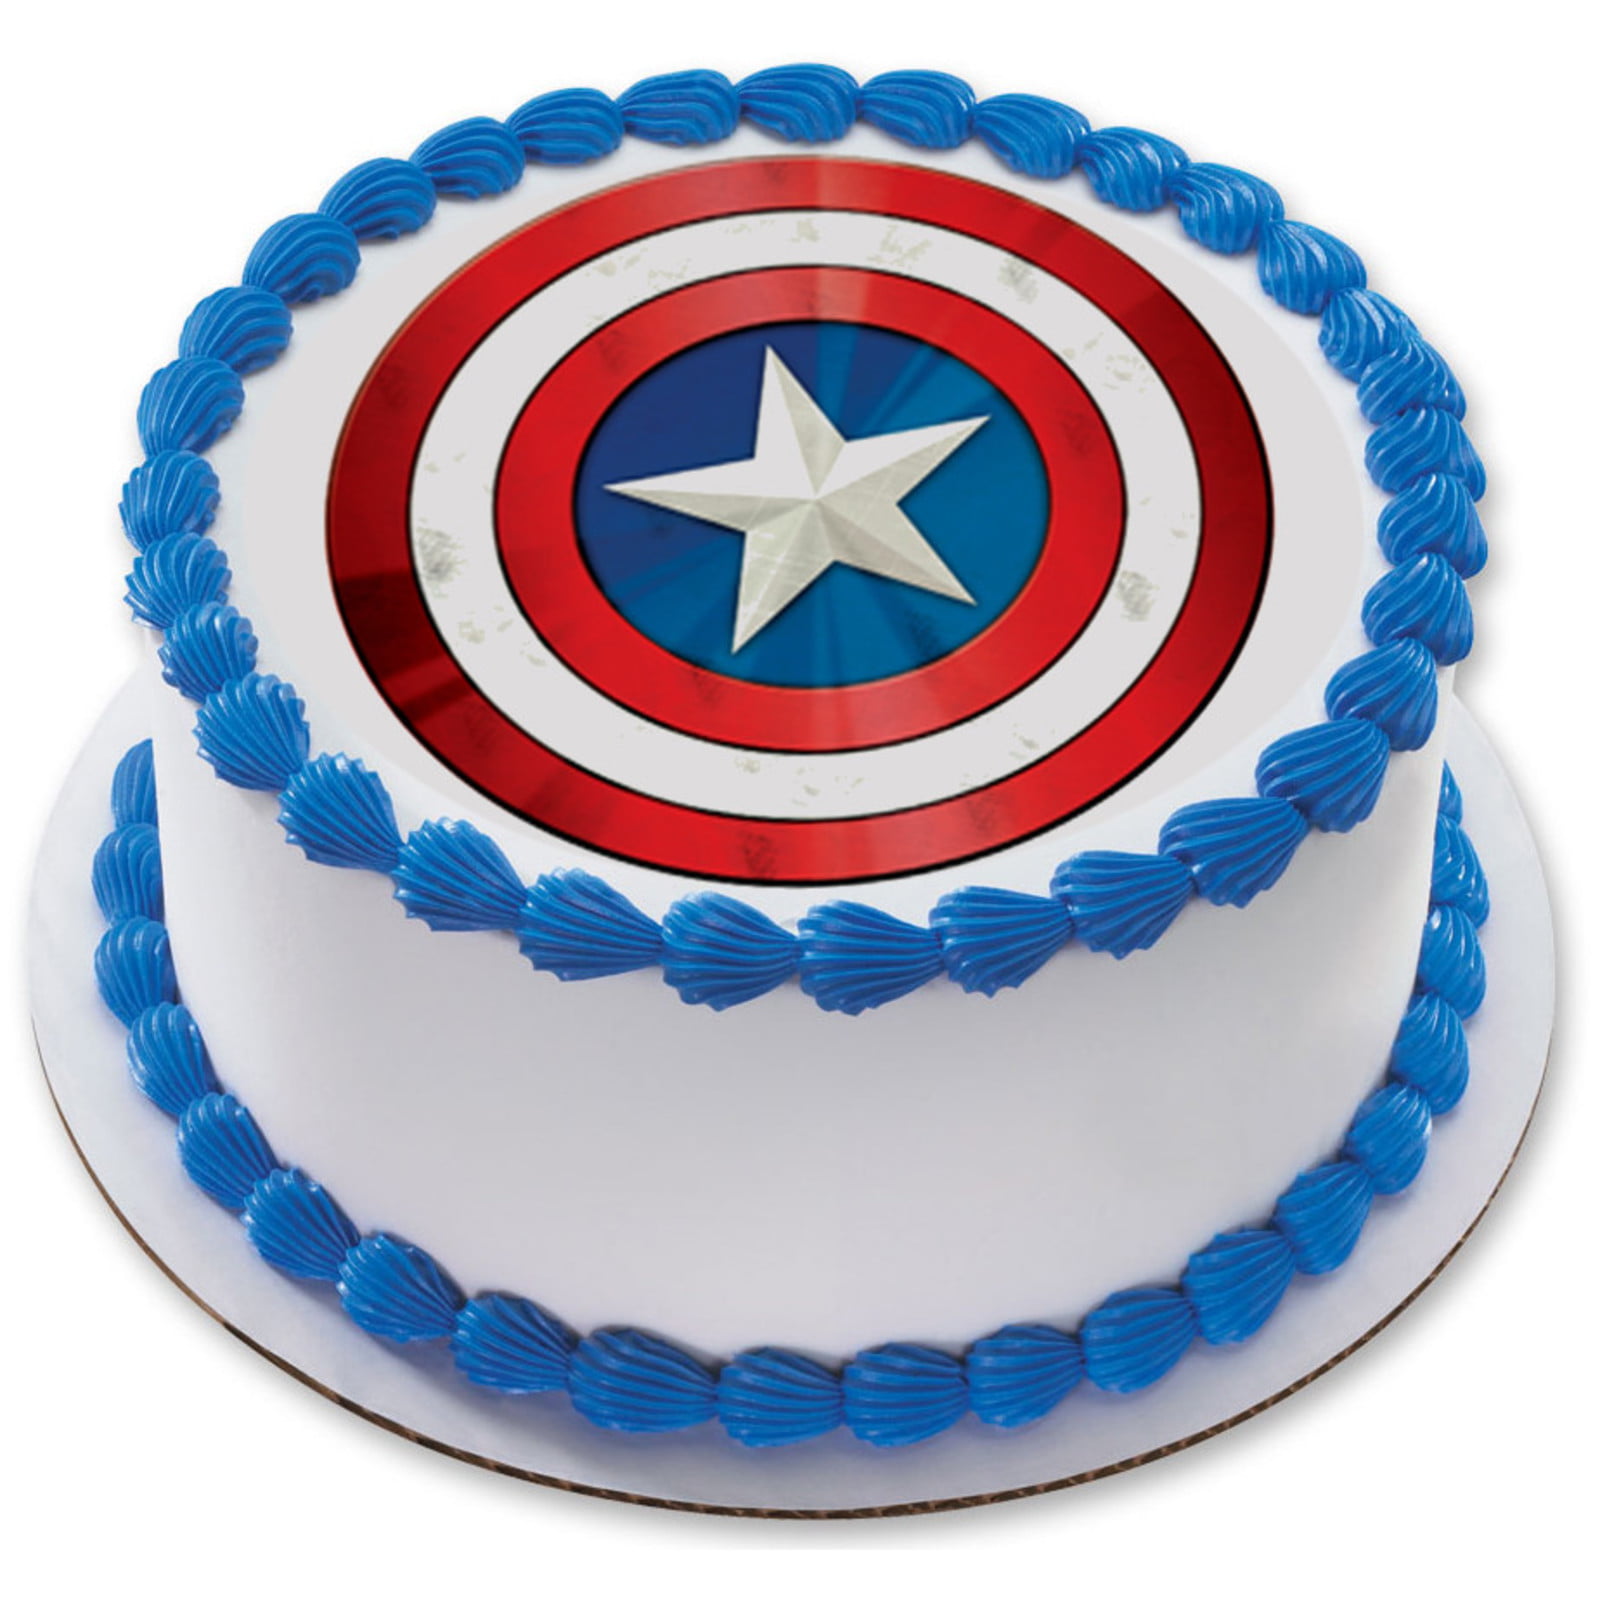 Marvel's Avengers Captain America 7.5" Round Edible Cake